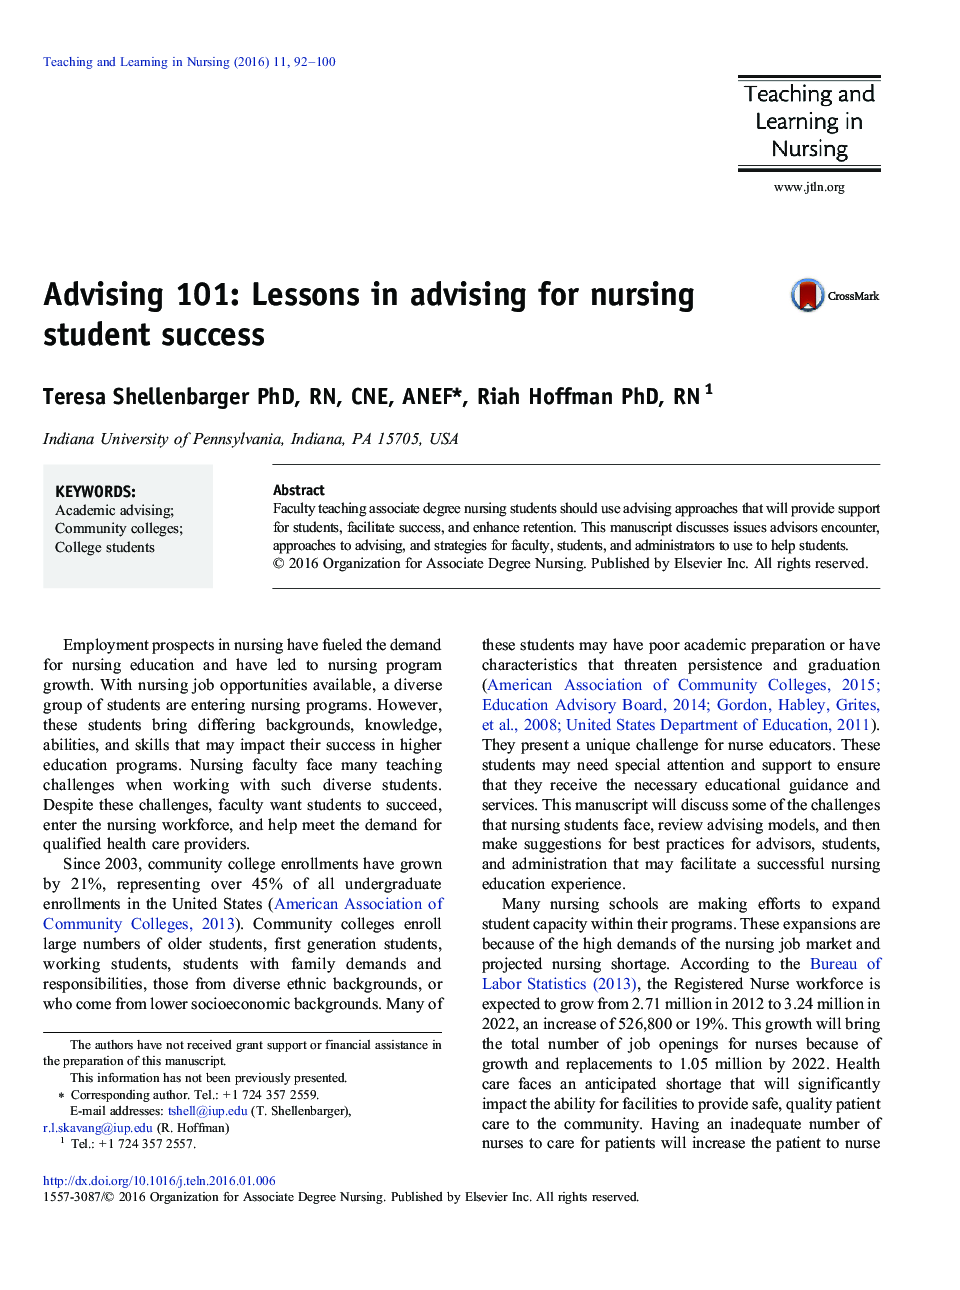 مشاوره 101: درسهای مشاوره برای موفقیت دانشجویان پرستاری